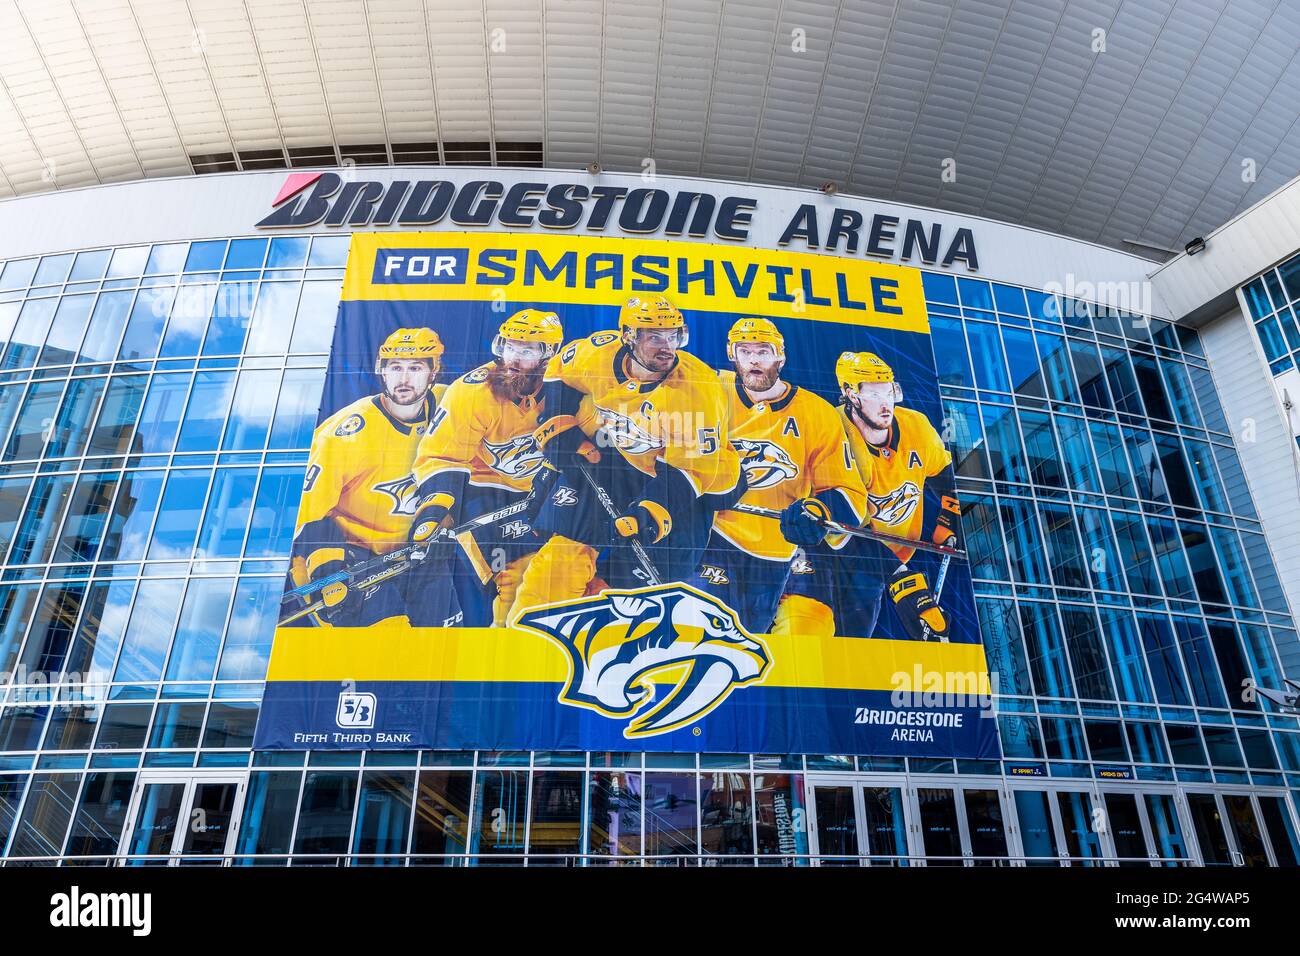 Die Bridgestone Arena ist die Heimat der Nashville Predators, die sich in der Innenstadt von Nashville befinden. Hier finden Hockeyspiele, Konzerte und andere Veranstaltungen statt. Stockfoto